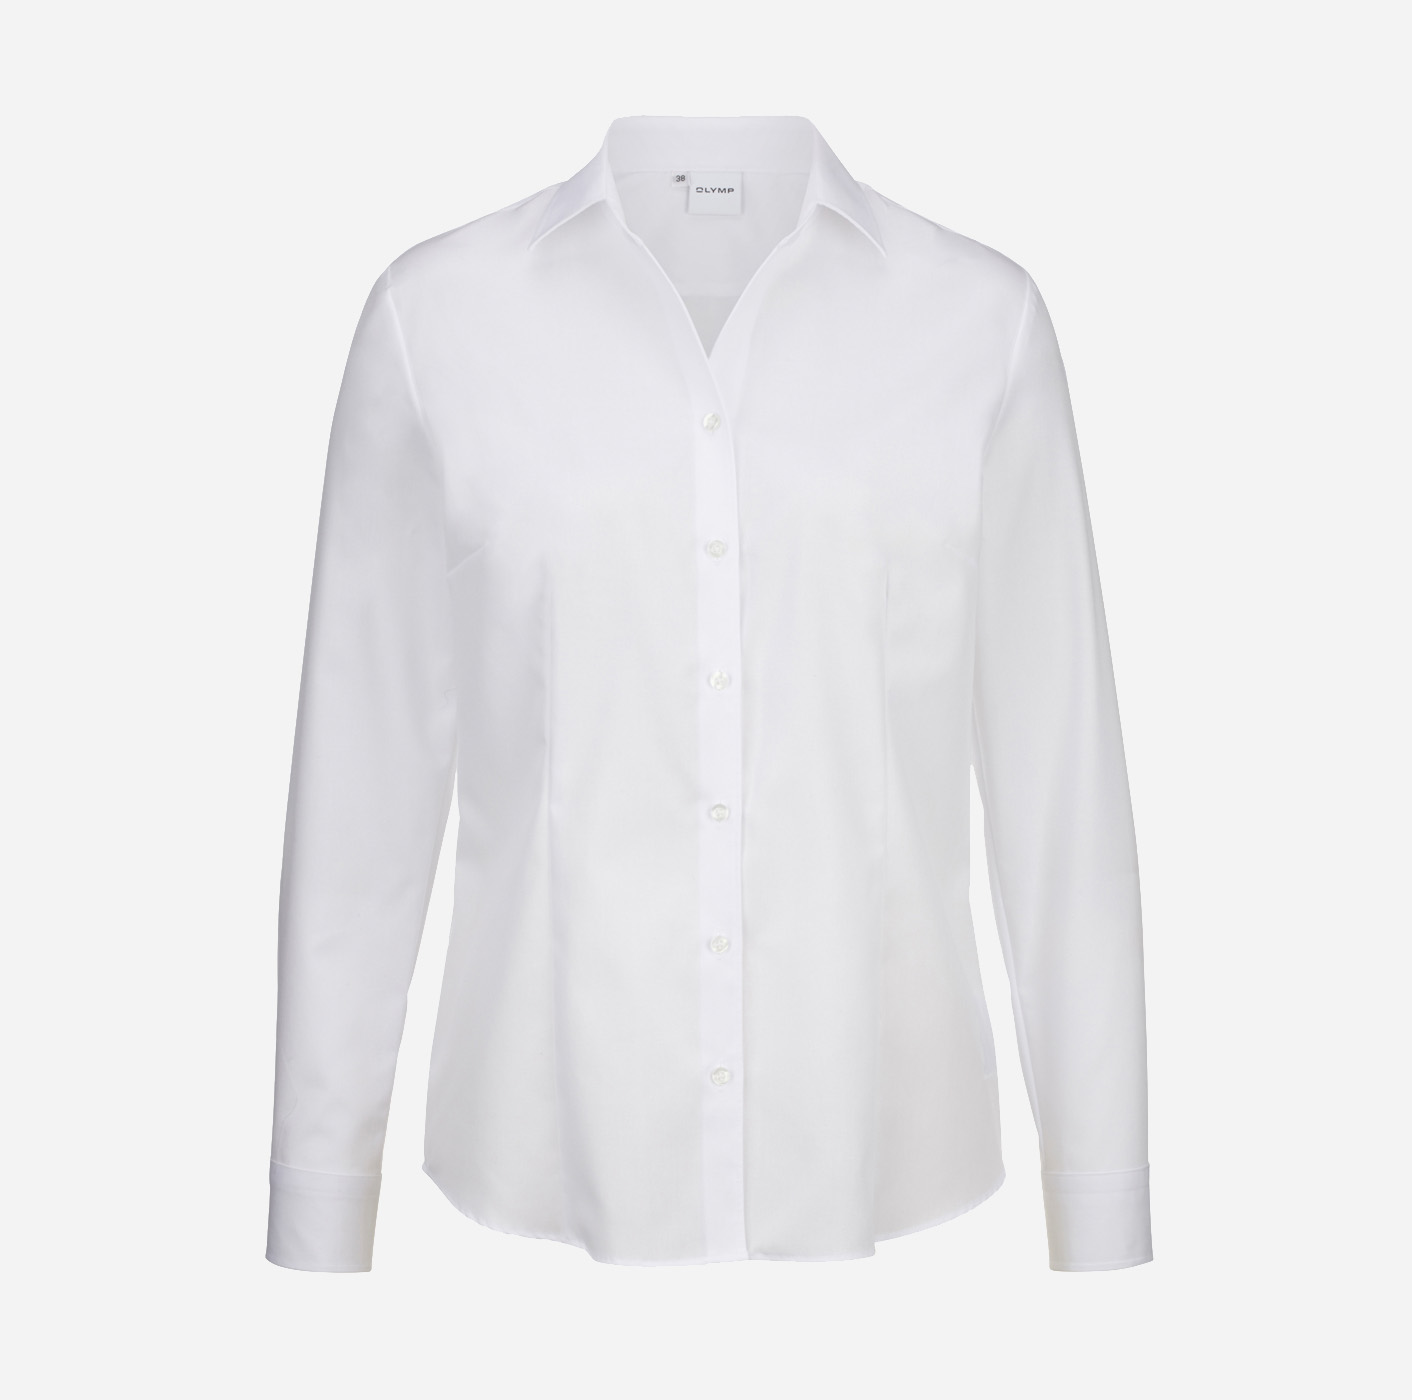 Langarm-Bluse mit Logo besticken: OLYMP Luxor comfort fit, weiß